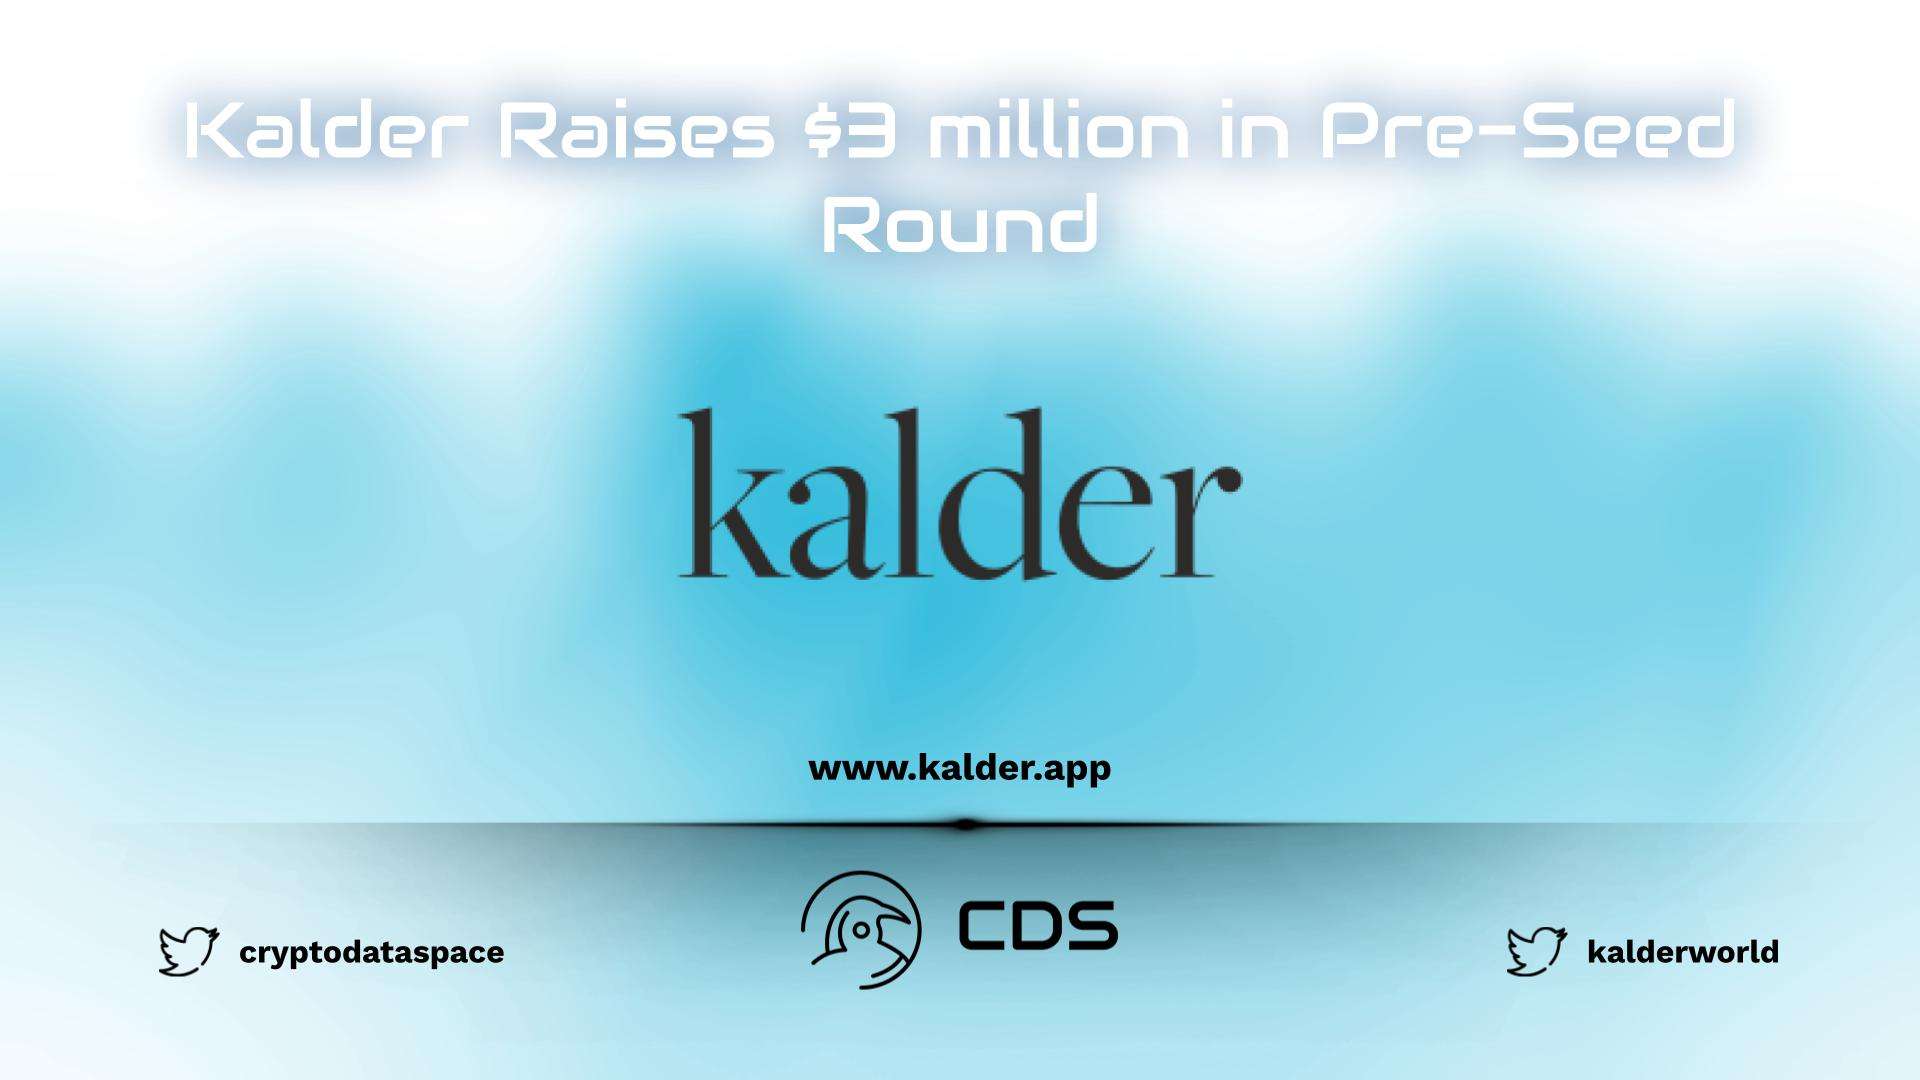 Kalder Raises $3 million in Pre-Seed Round